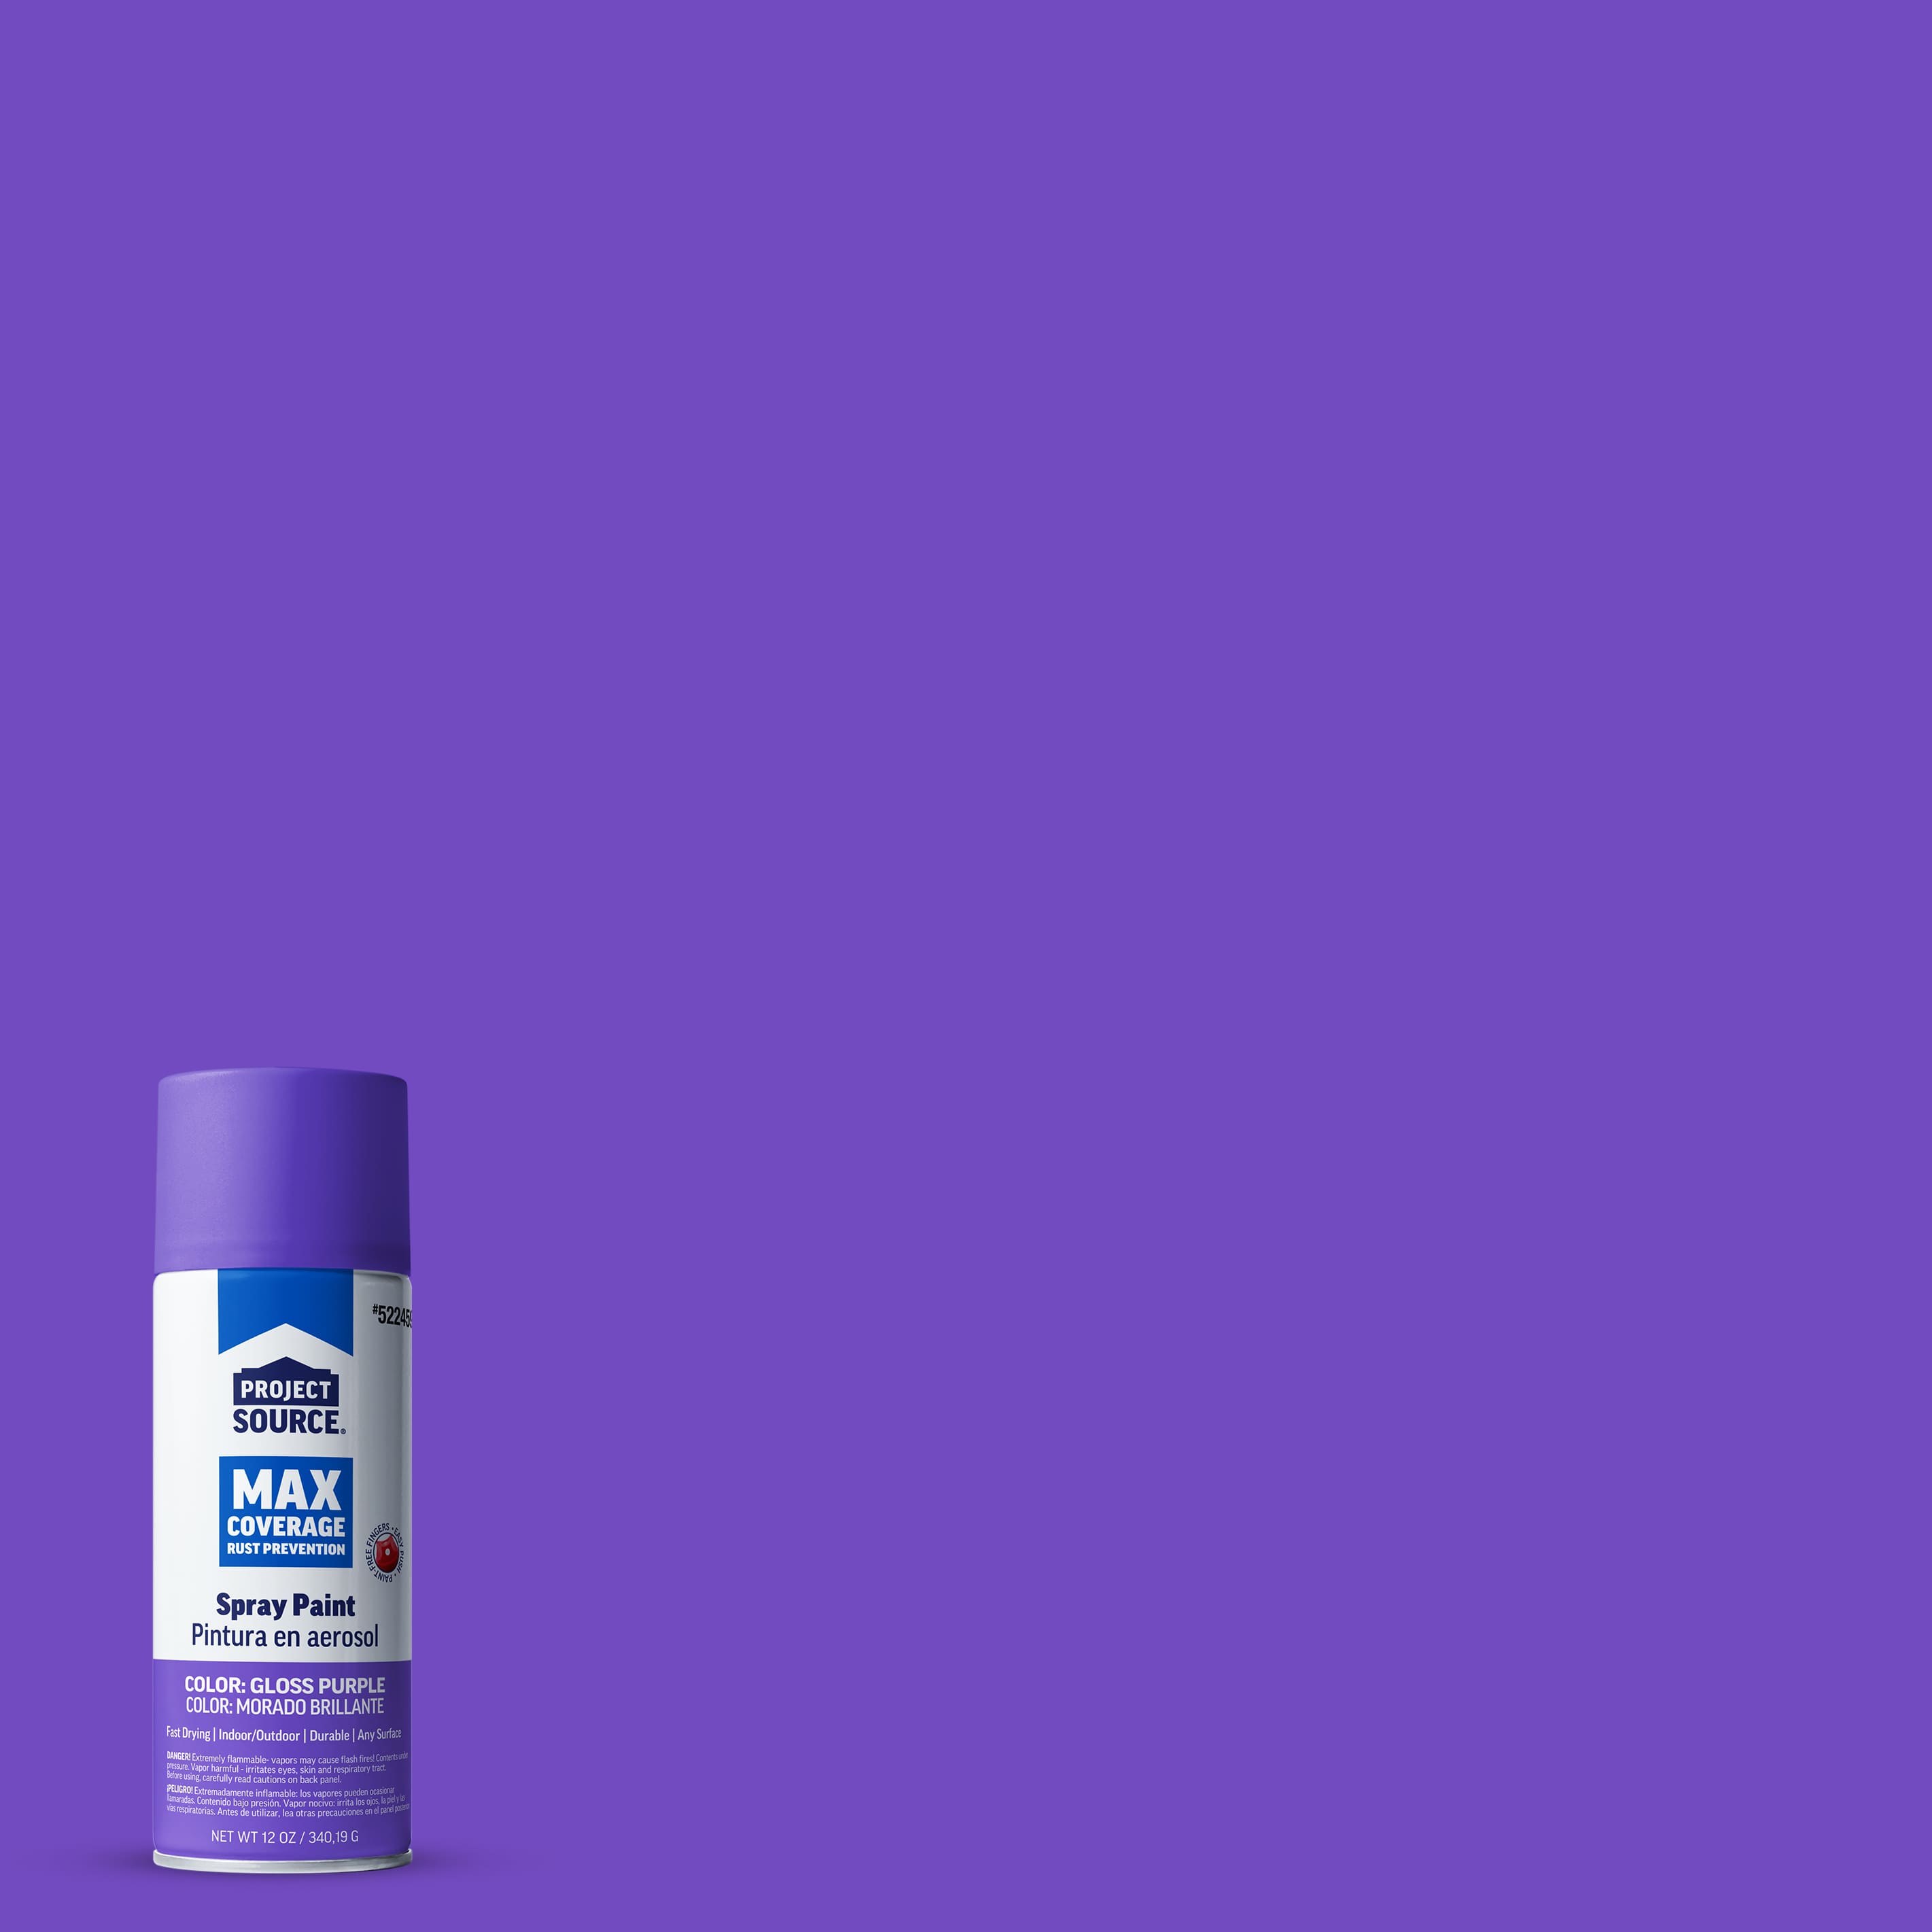 Krylon K05533007 COLORmaxx Spray Paint Gloss Purple 12 Ounce